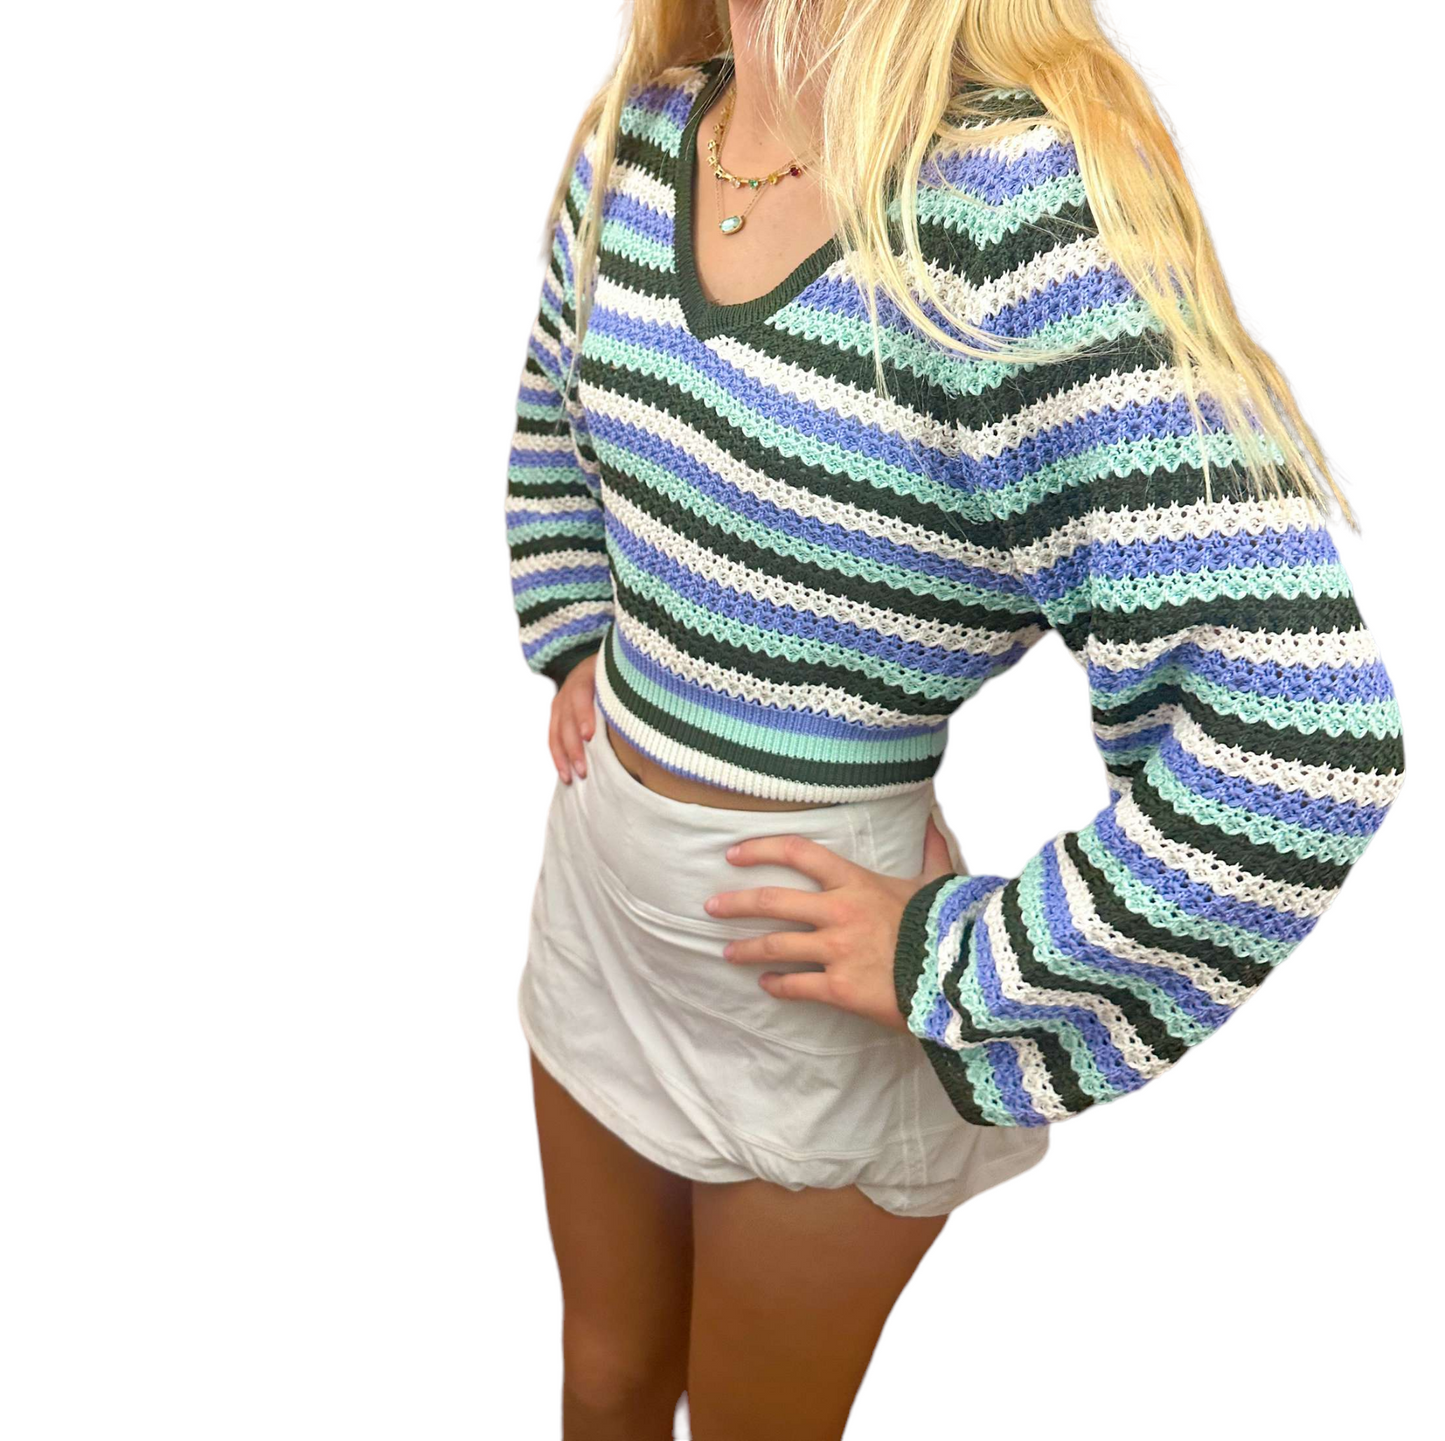 Gretchen sweater